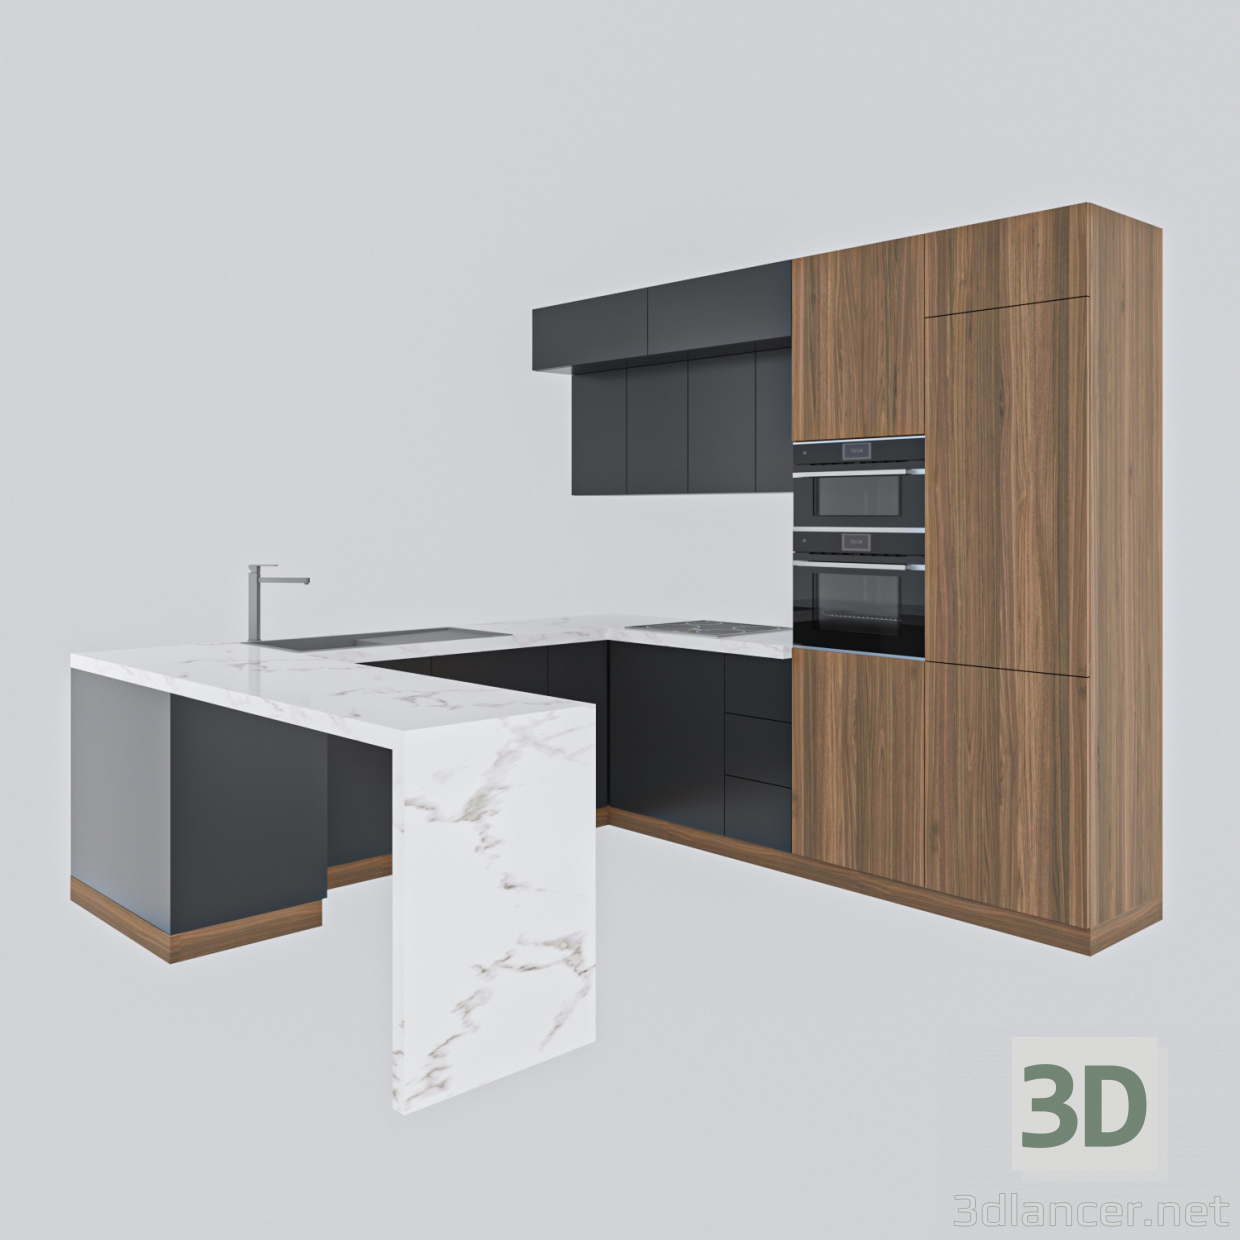 3D Minimalizm tarzında modern mutfak modeli satın - render